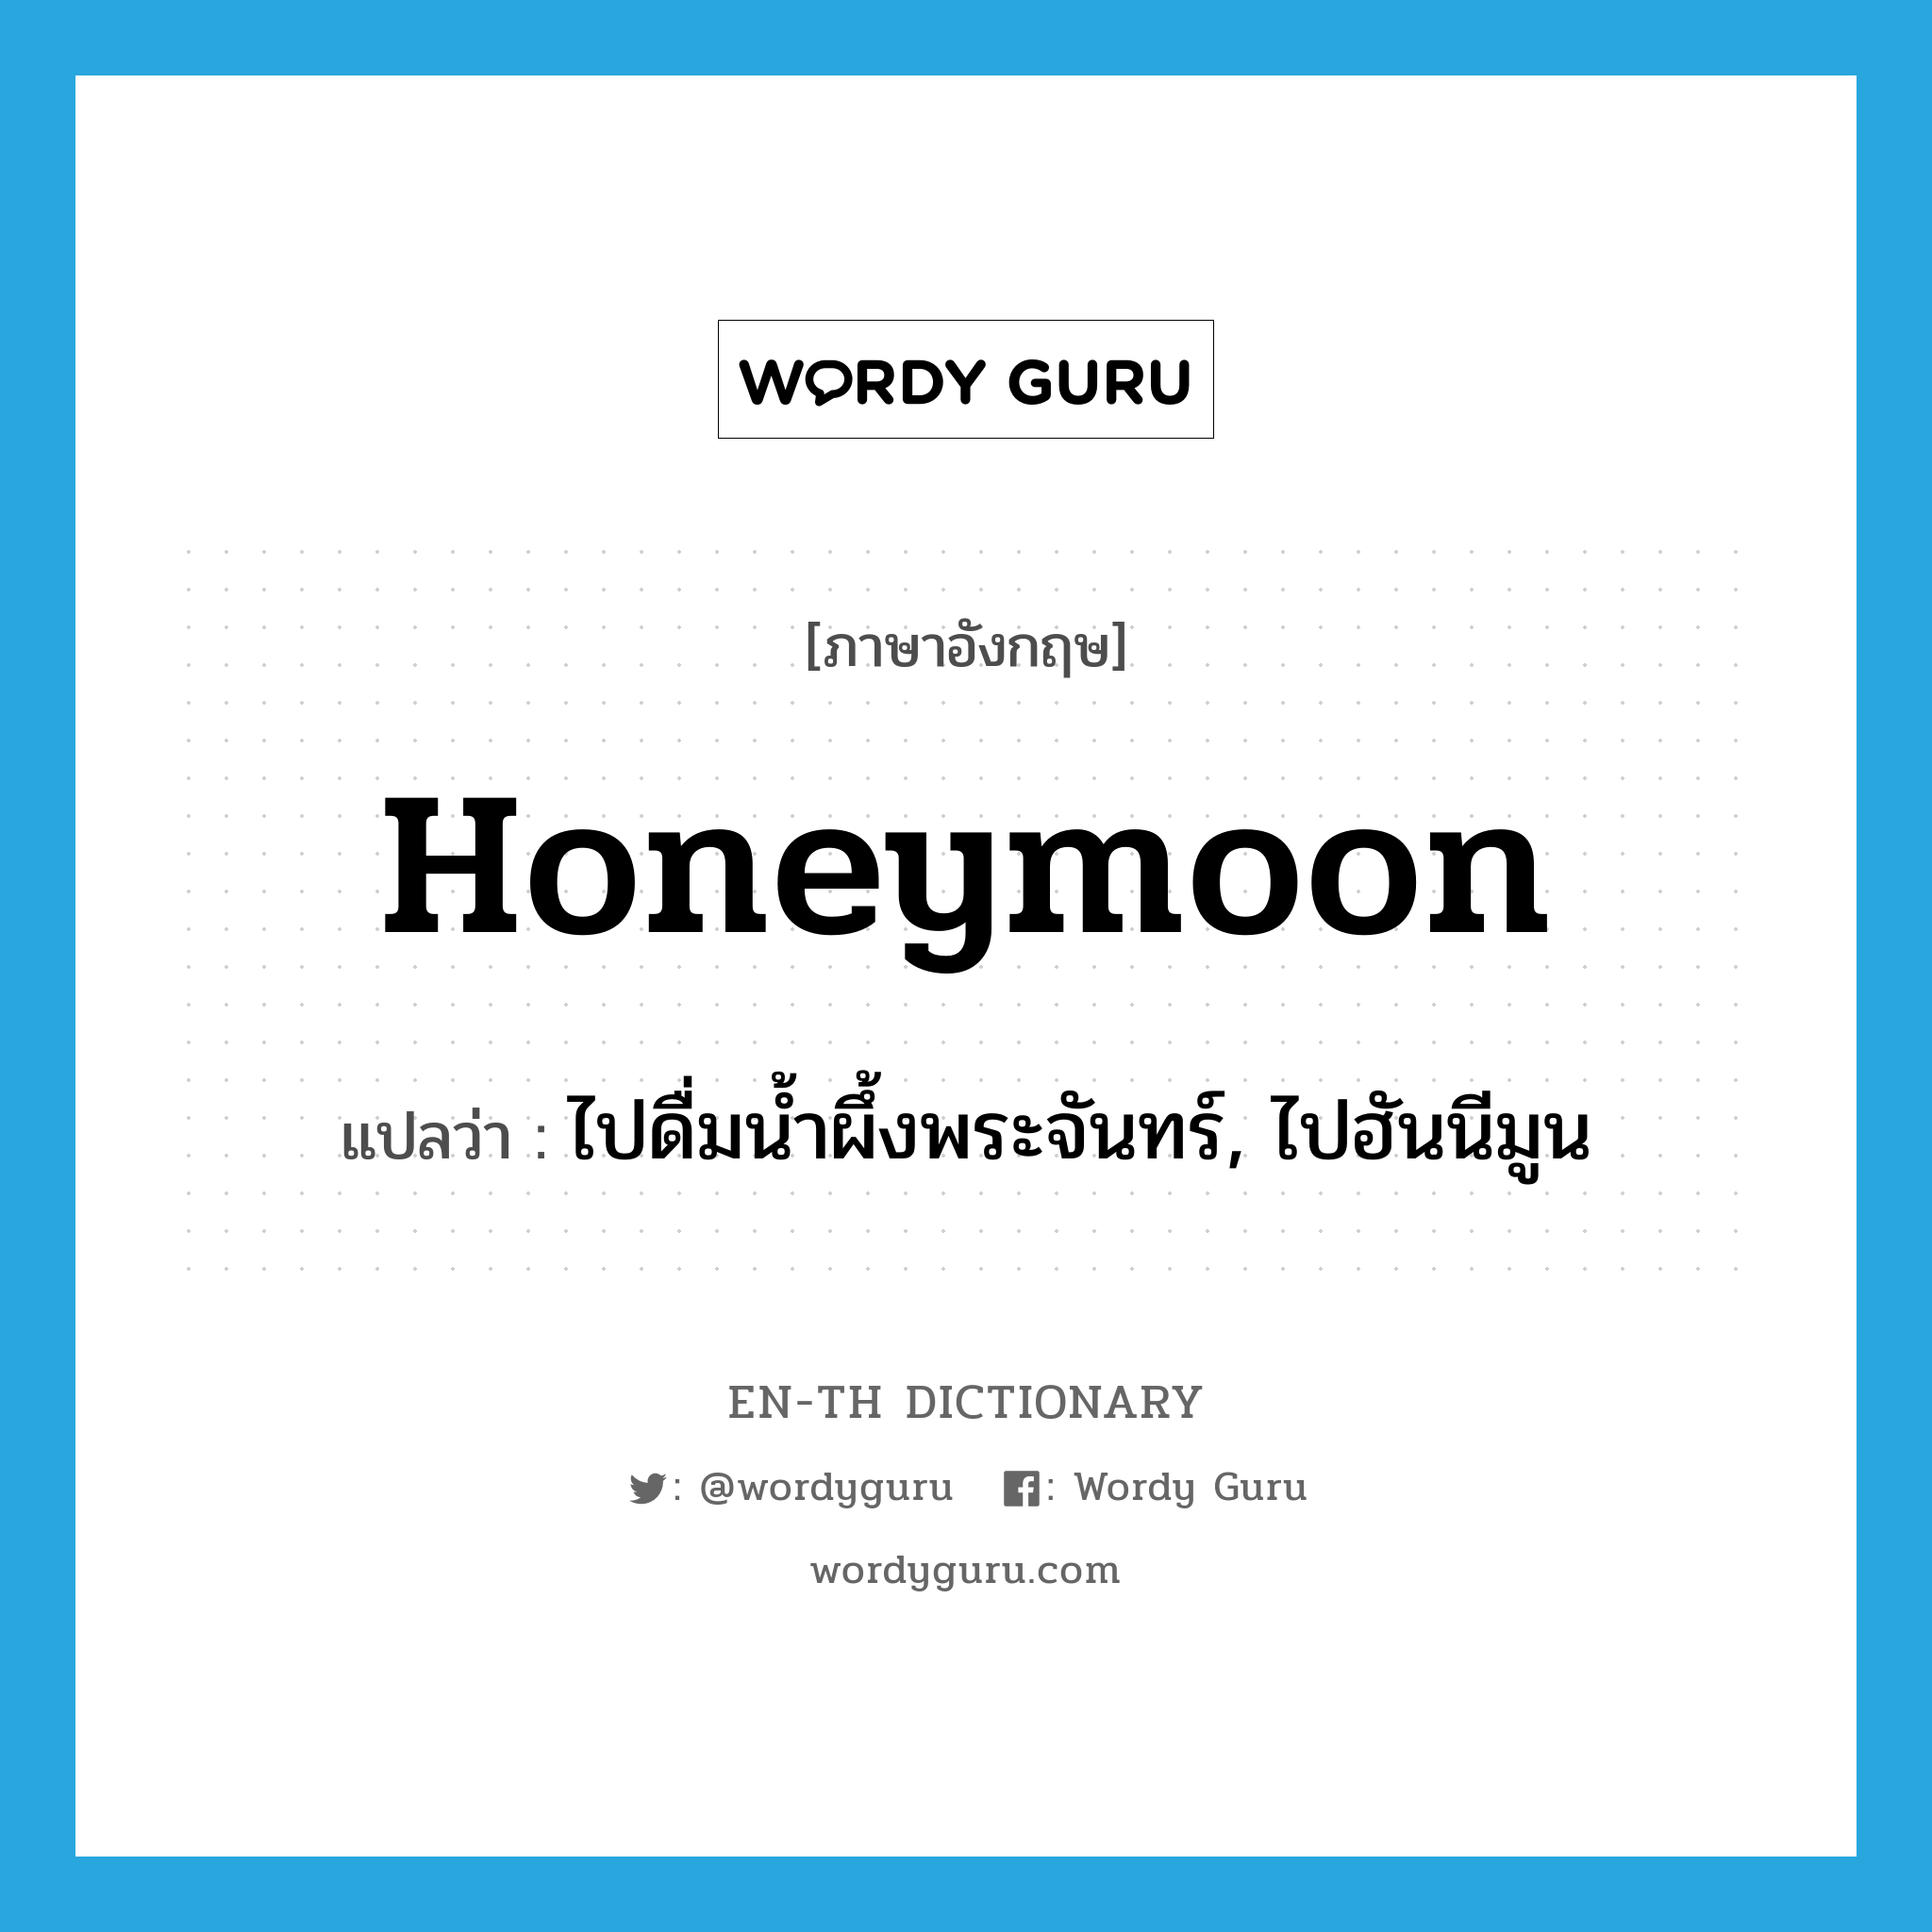 ไปดื่มน้ำผึ้งพระจันทร์, ไปฮันนีมูน ภาษาอังกฤษ?, คำศัพท์ภาษาอังกฤษ ไปดื่มน้ำผึ้งพระจันทร์, ไปฮันนีมูน แปลว่า honeymoon ประเภท VI หมวด VI